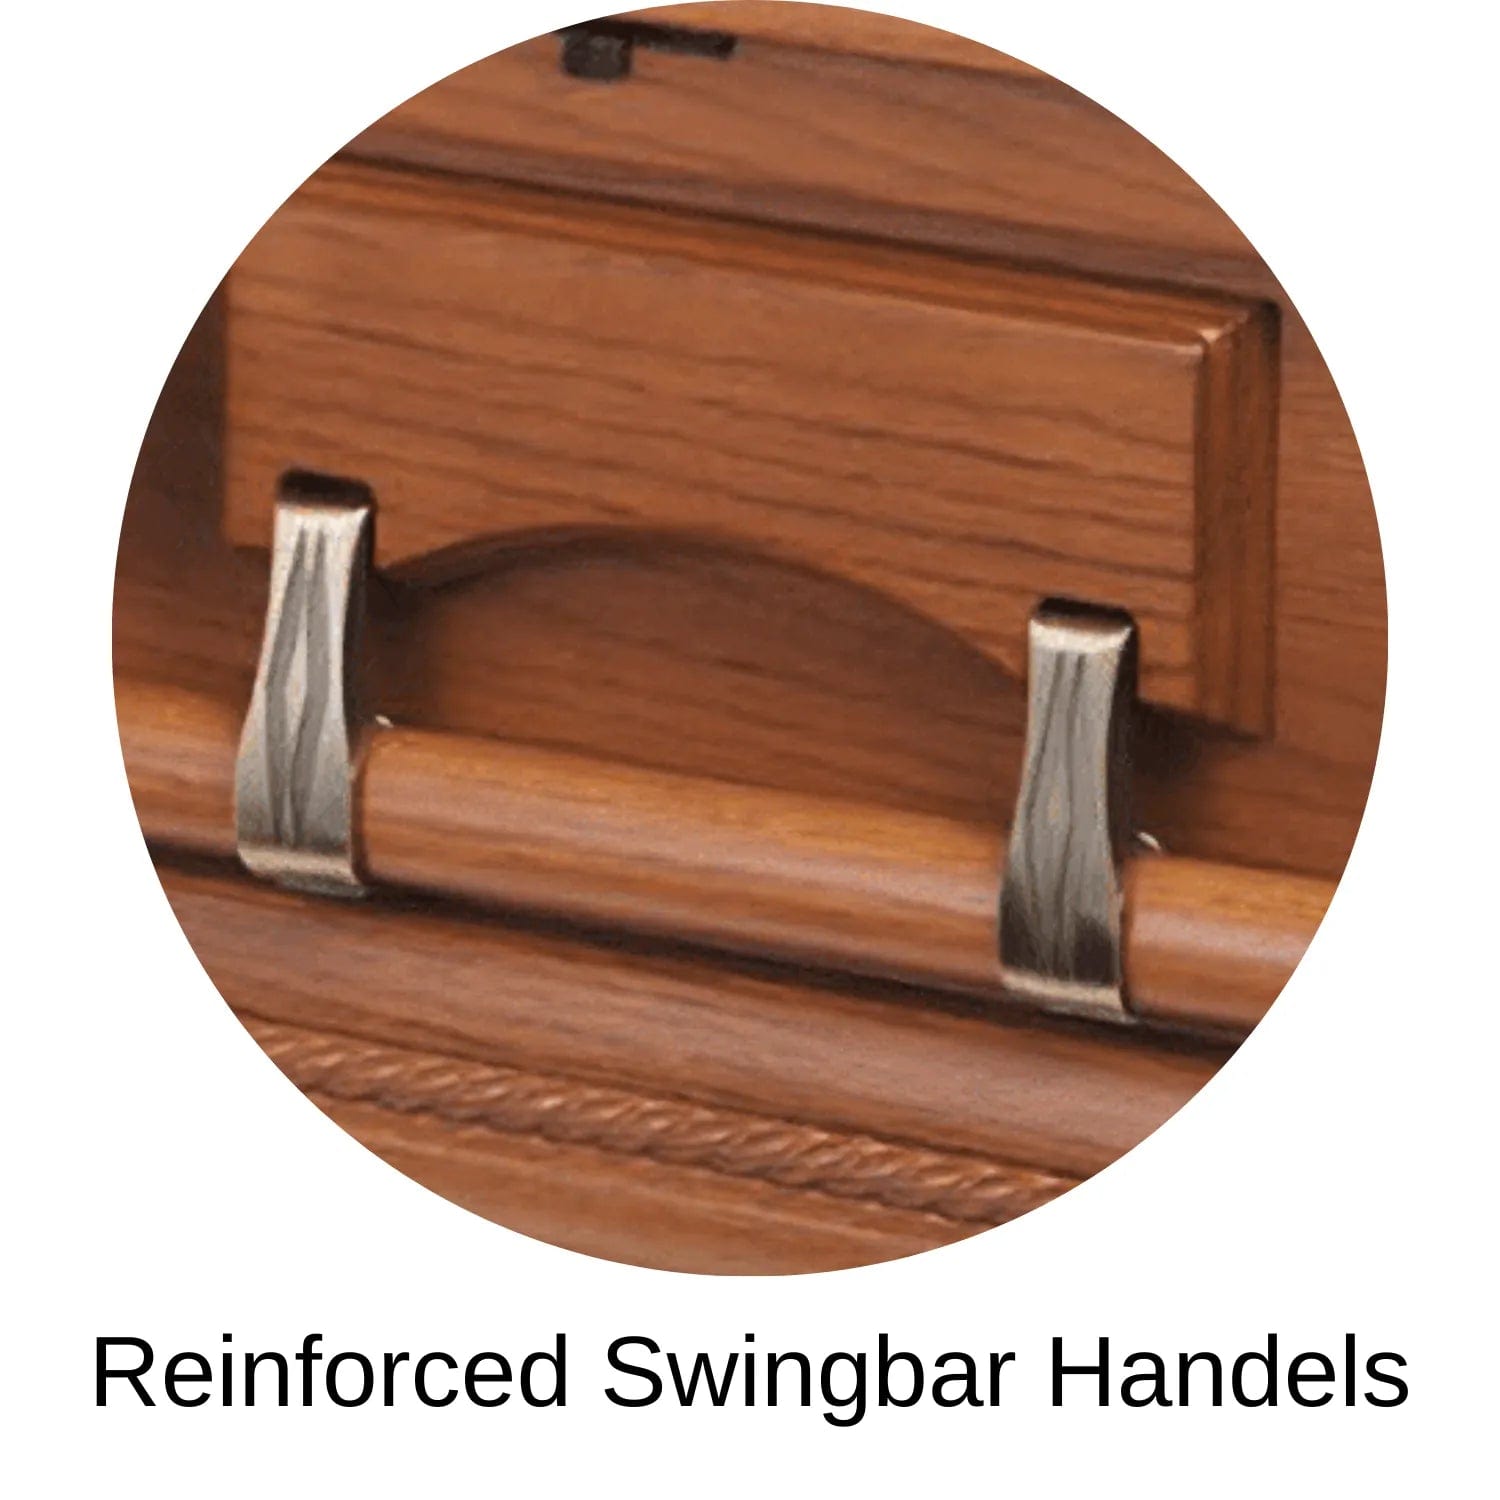 Reinforced Swingbar Handles Of Veneto (Oak) Series Wood Casket with Satin Finish